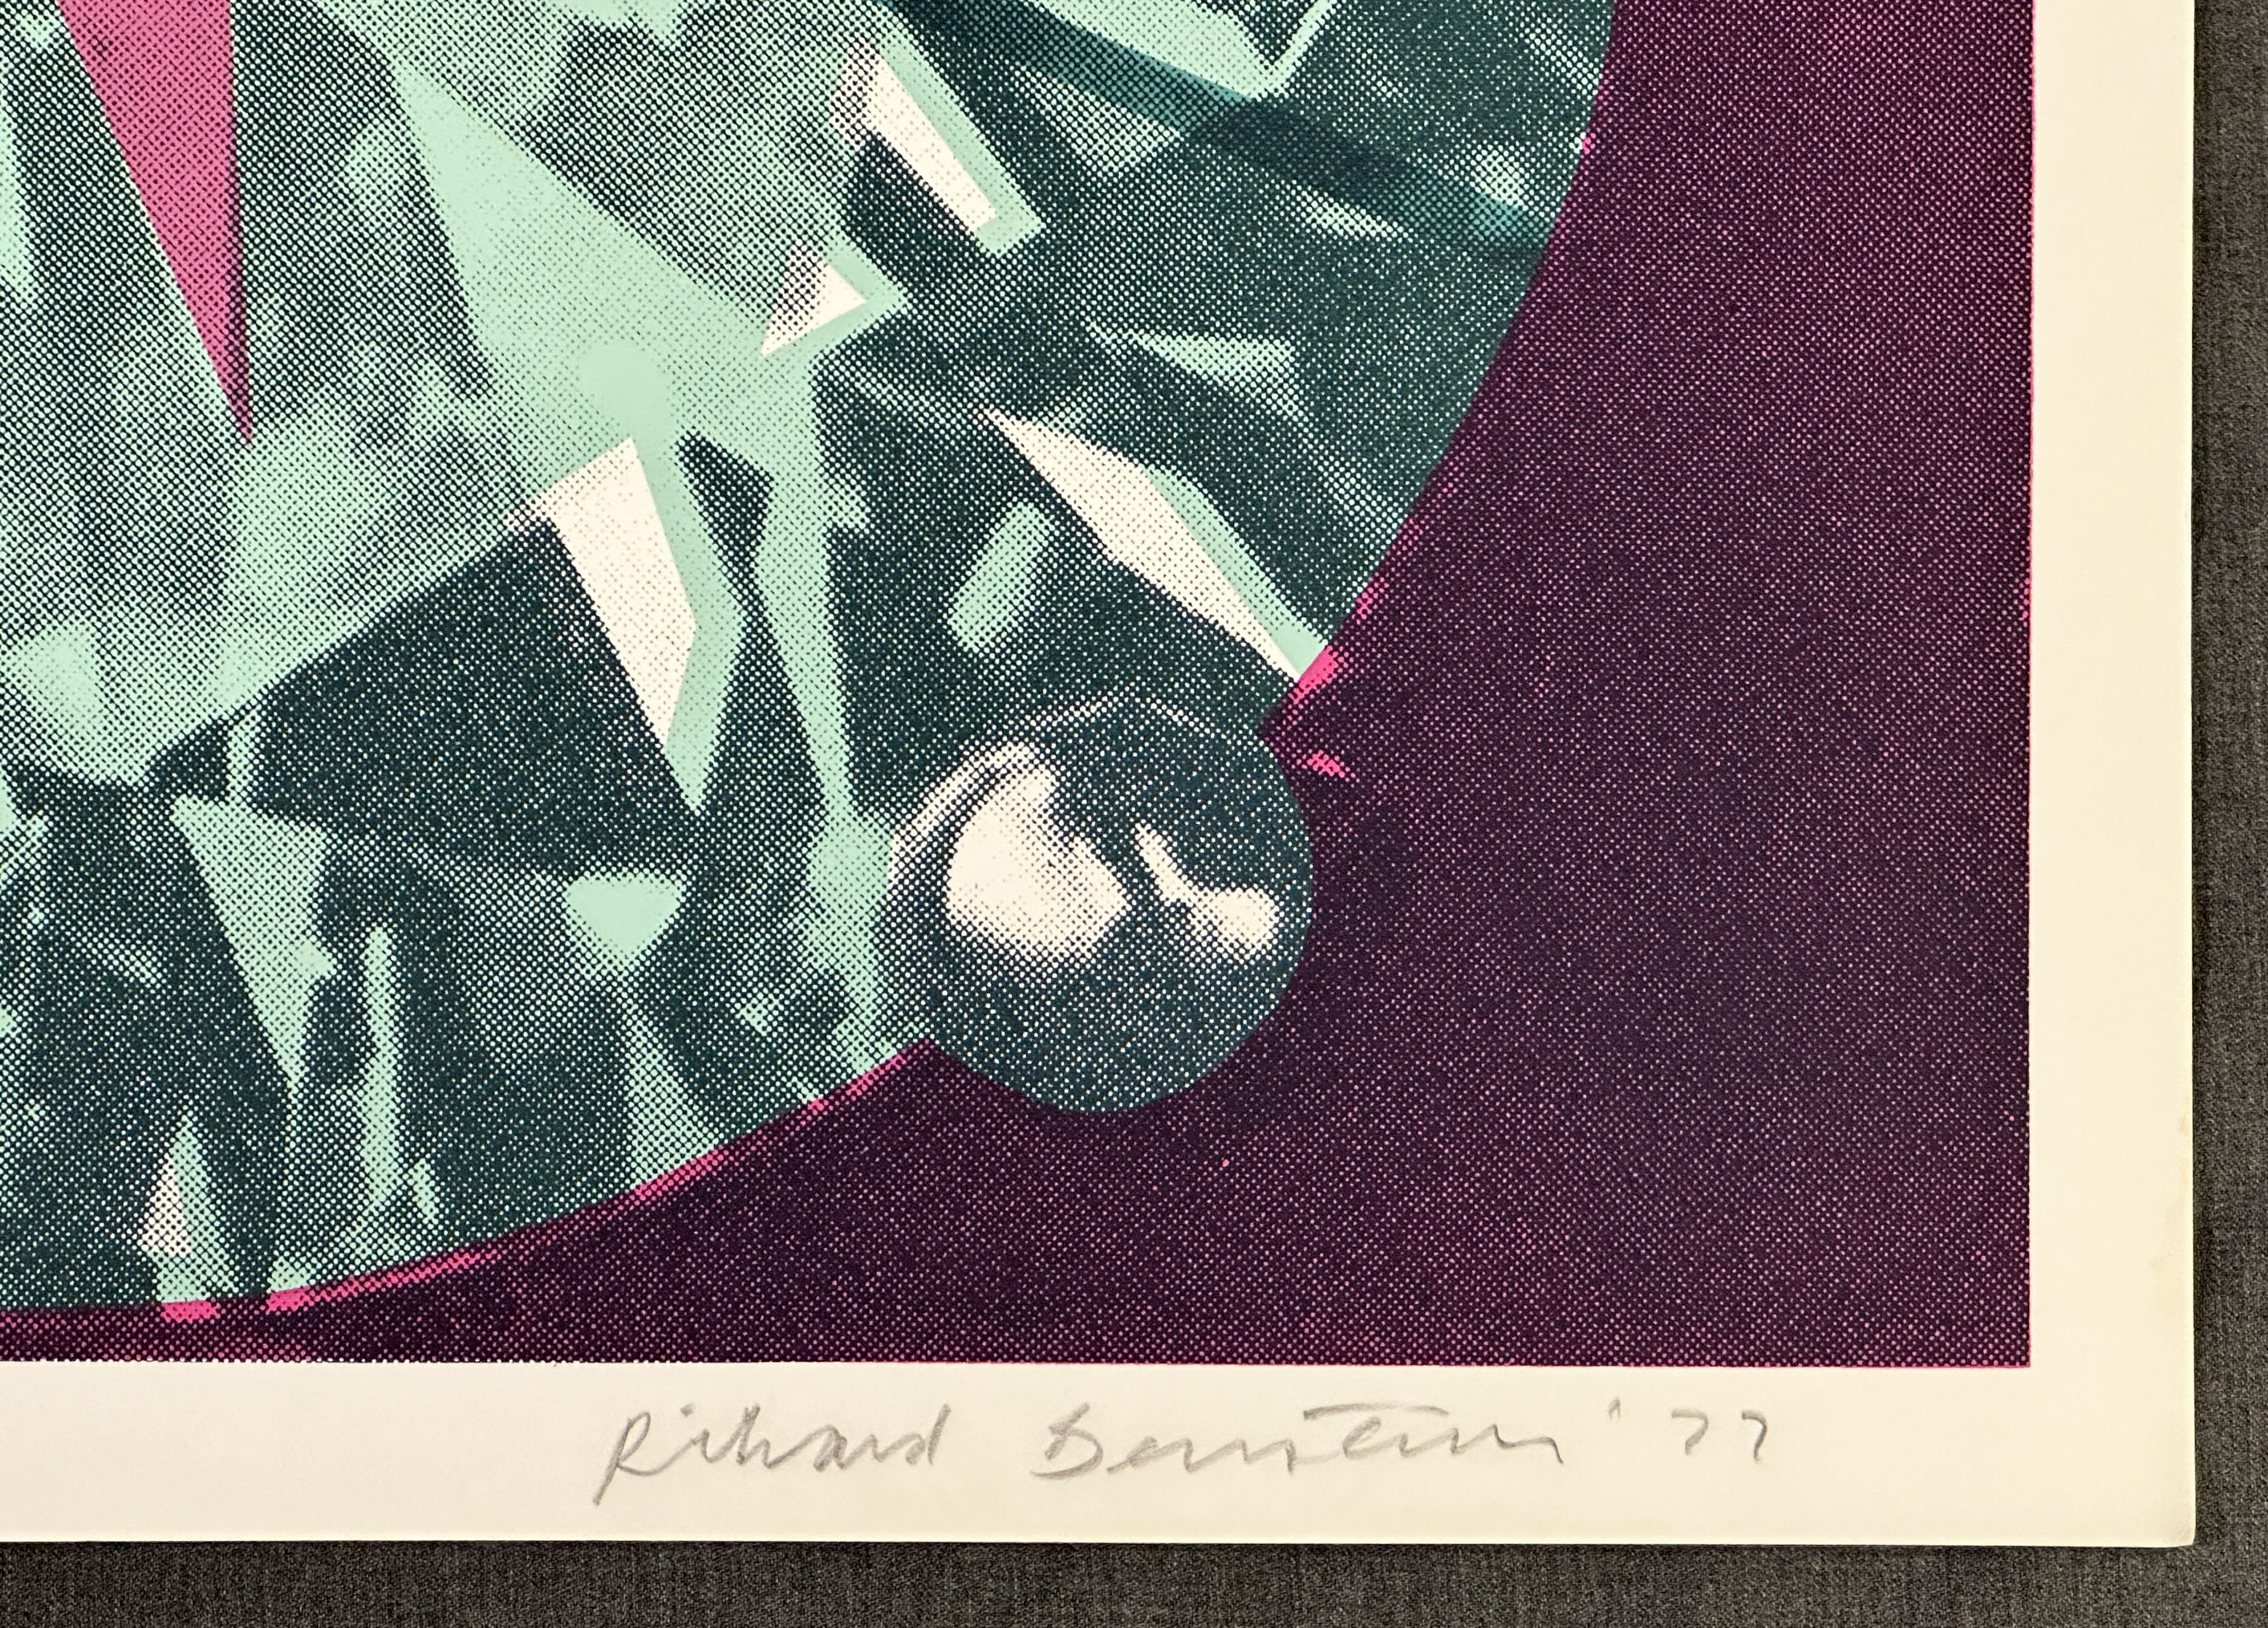 Diamantring 1977 Signierter Siebdruck in limitierter Auflage (Pop-Art), Print, von Richard Bernstein